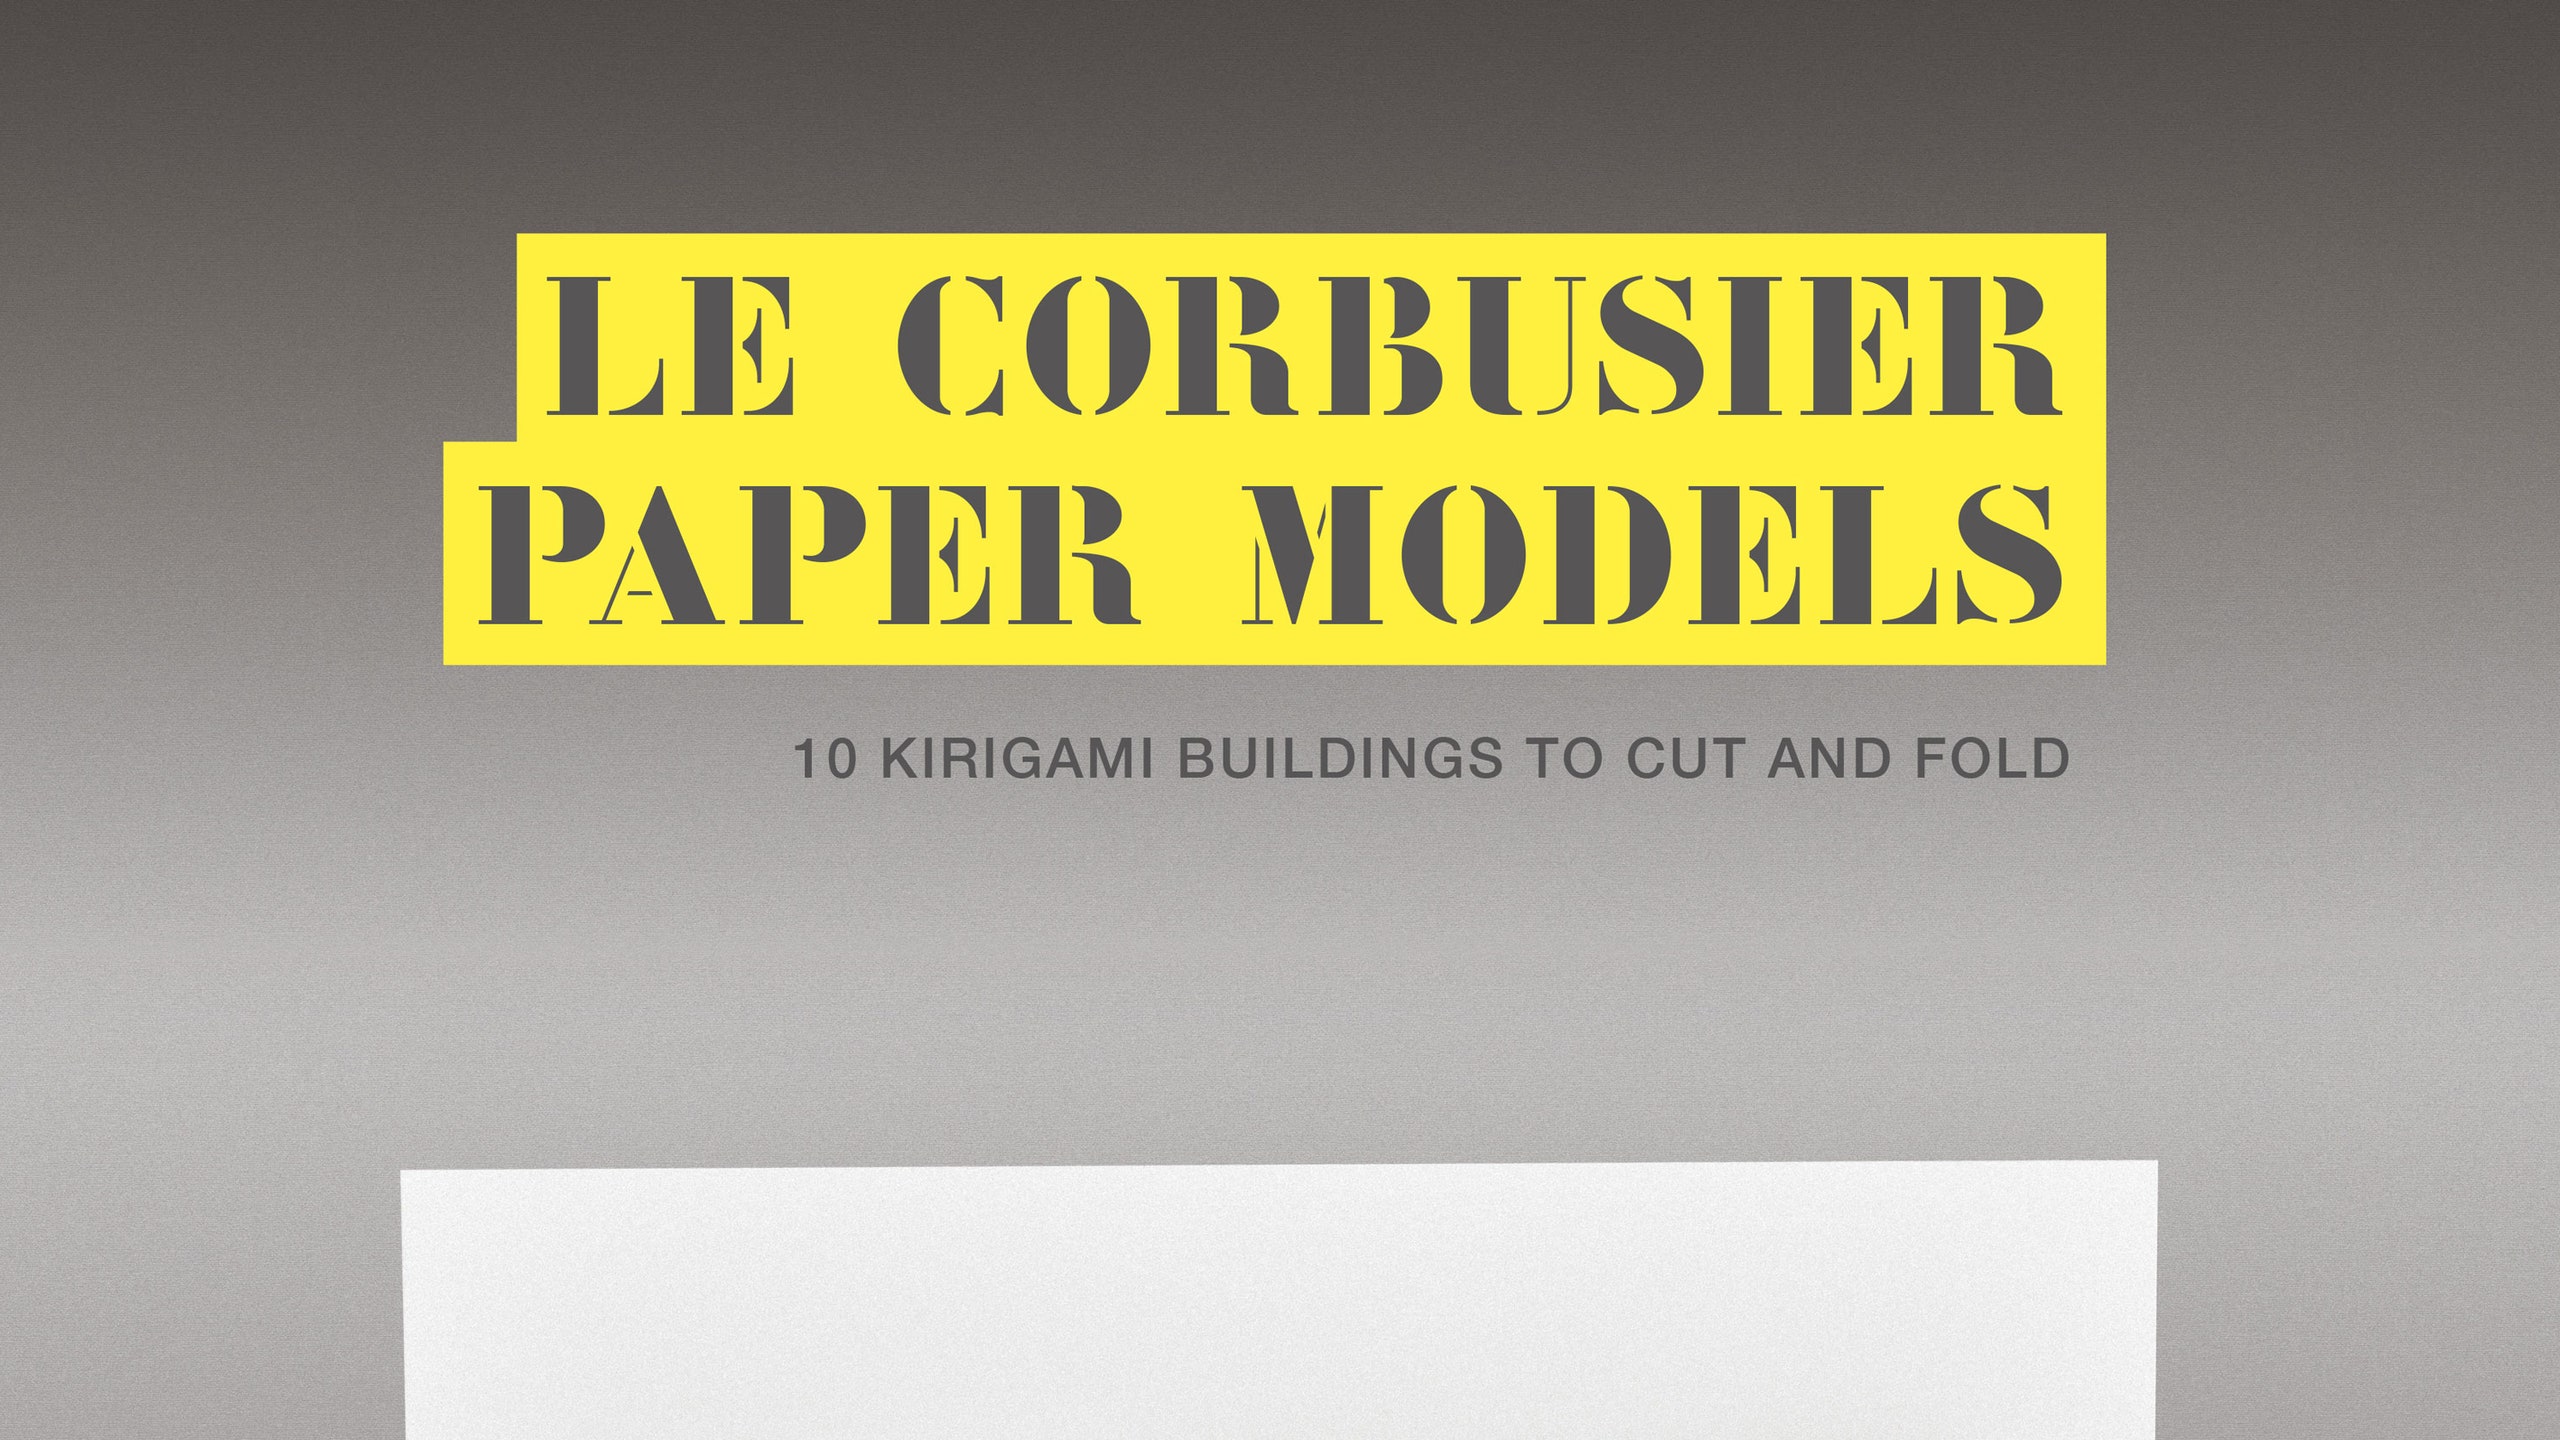 10 моделей зданий Ле Корбюзье в новой книгемануале Марка ХейганГири